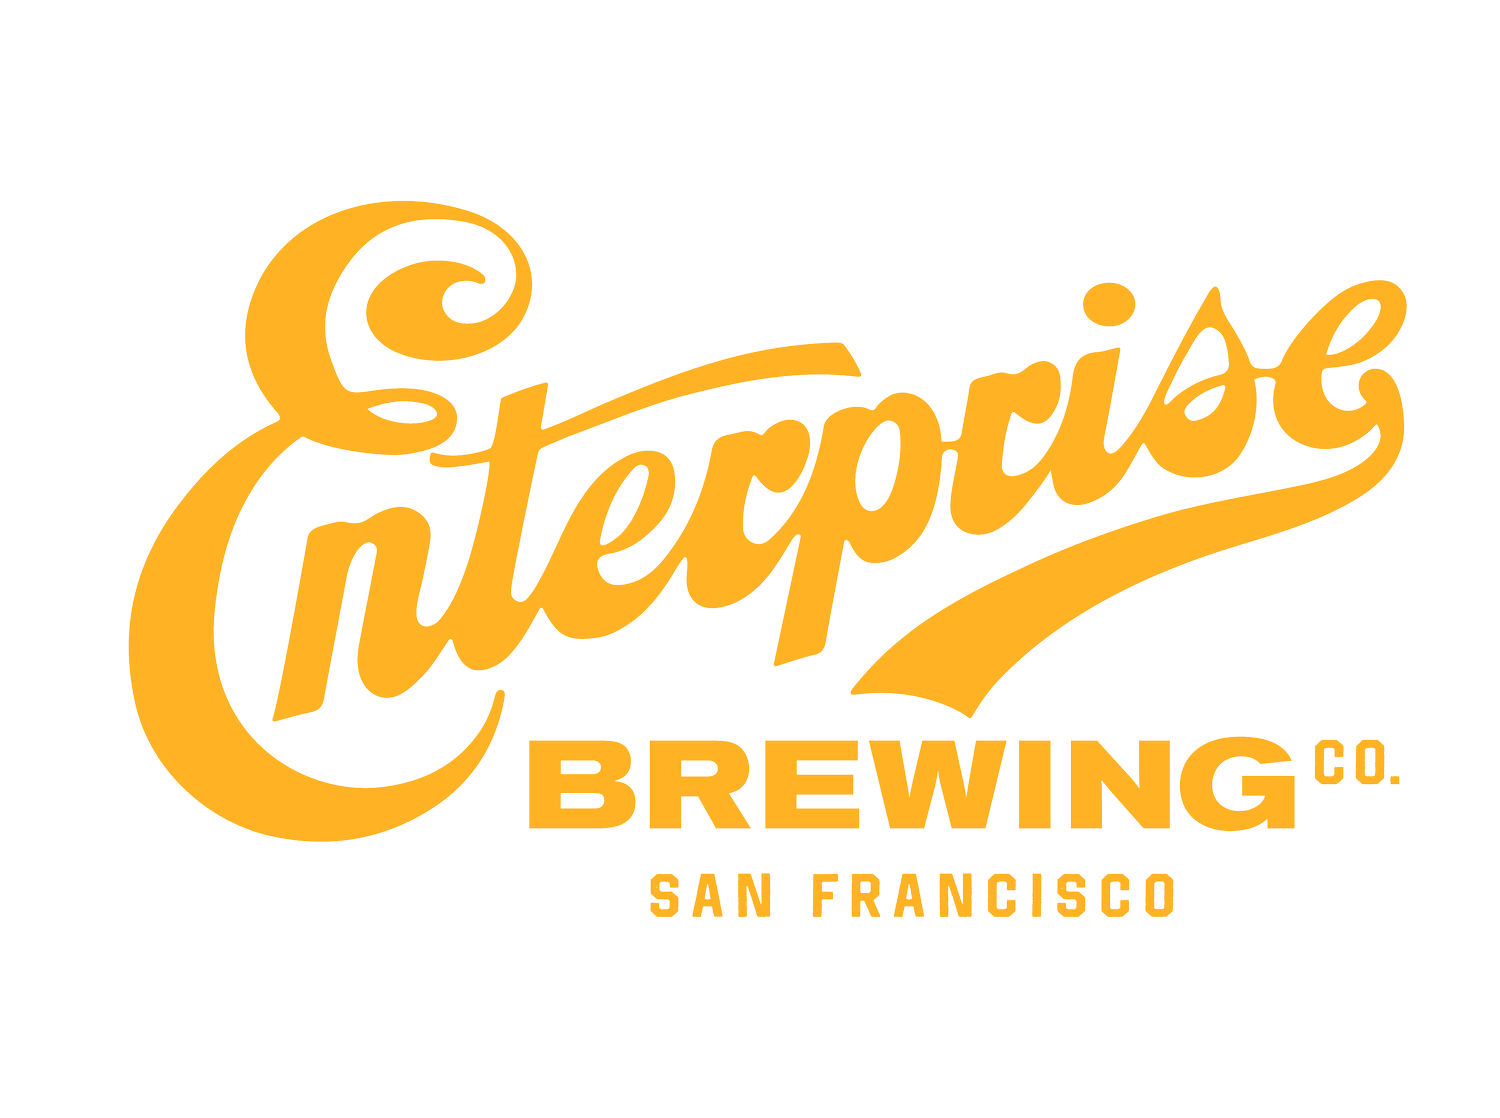 Enterprise Beer Co.